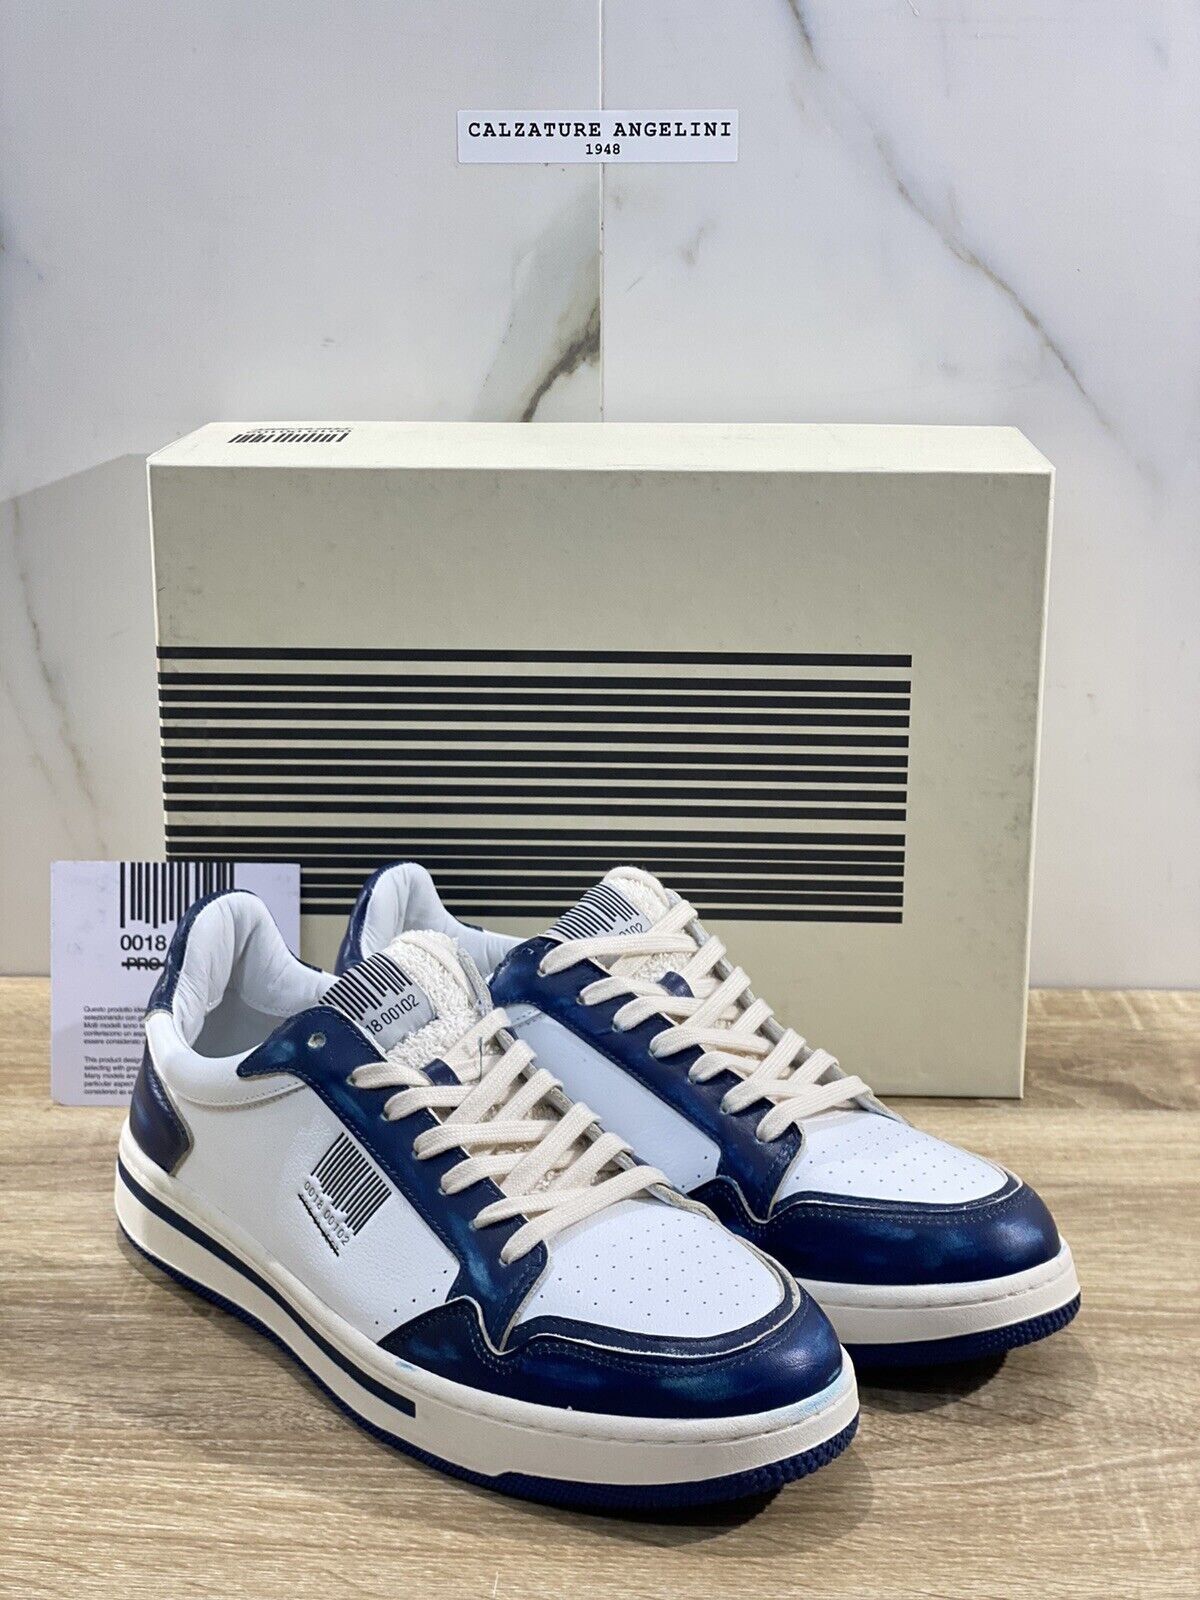 Project 001 Sneaker Uomo Pelle Bianca Blu Casual Shoes Men Sneaker 45